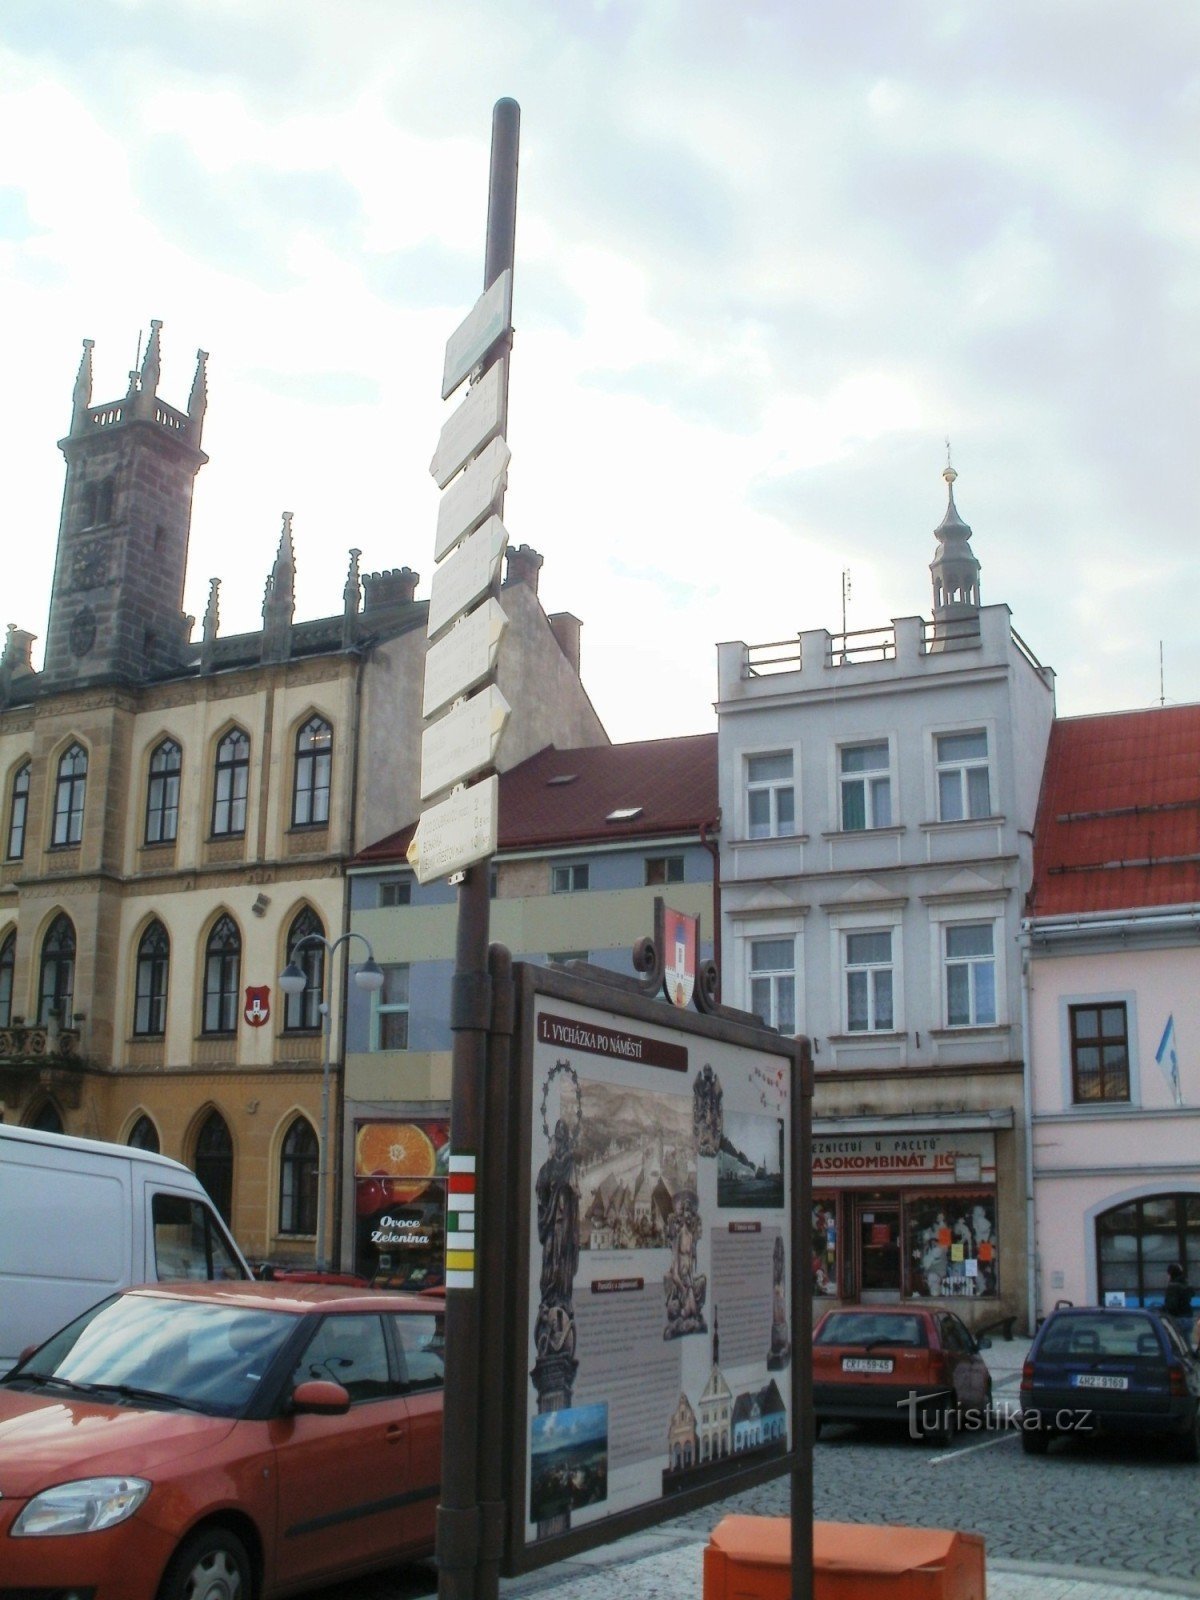 Hořice - glavni turistični kažipot